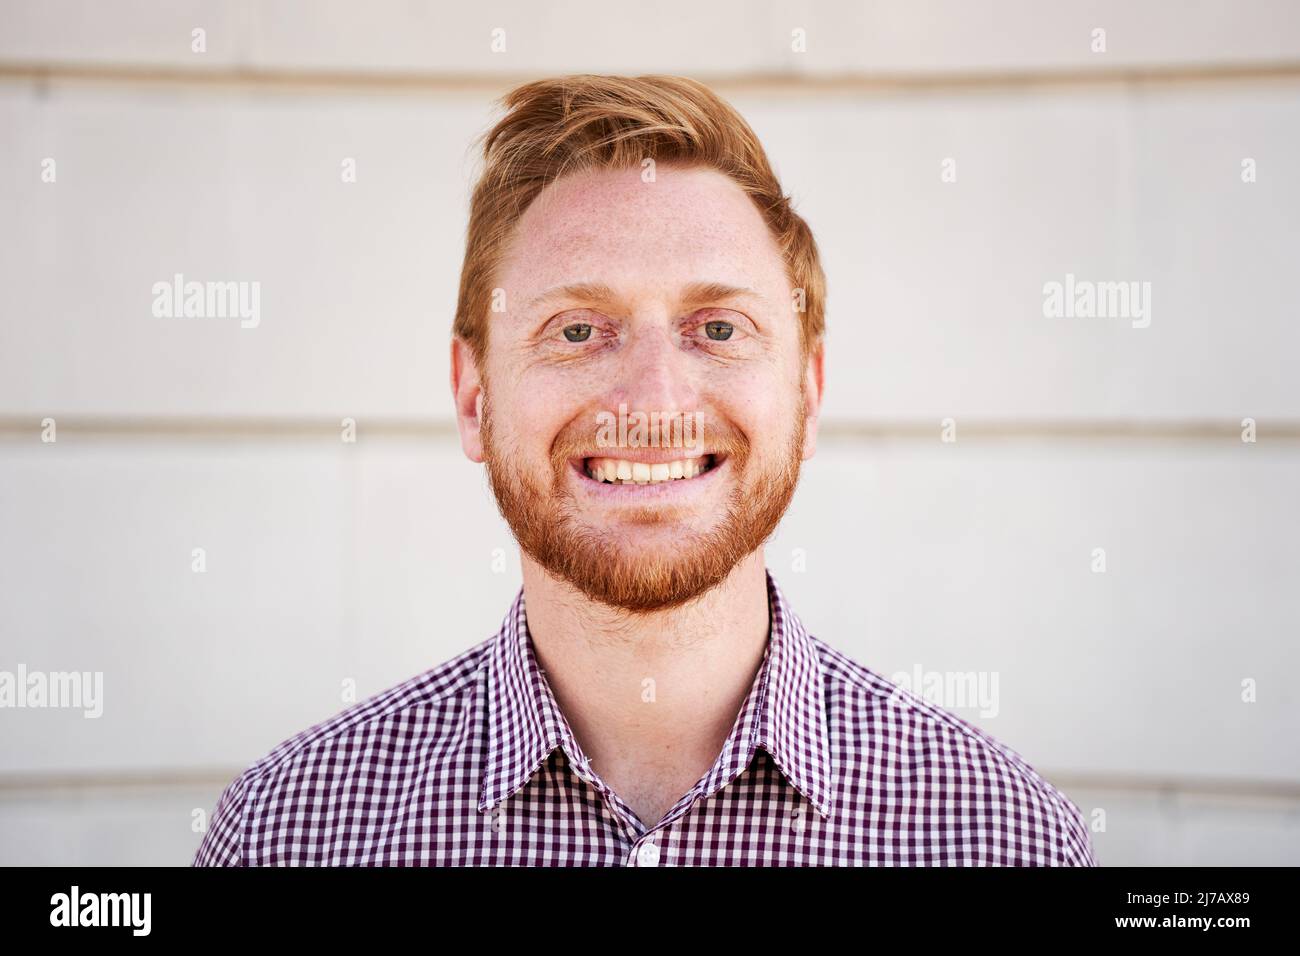 Außenportrait eines lächelnden roten Haares, der die Kamera mit einem positiven Gesicht und freundlichem Aussehen lachend anschaut. Nahaufnahme eines glücklichen menschlichen Gesichts - Stockfoto